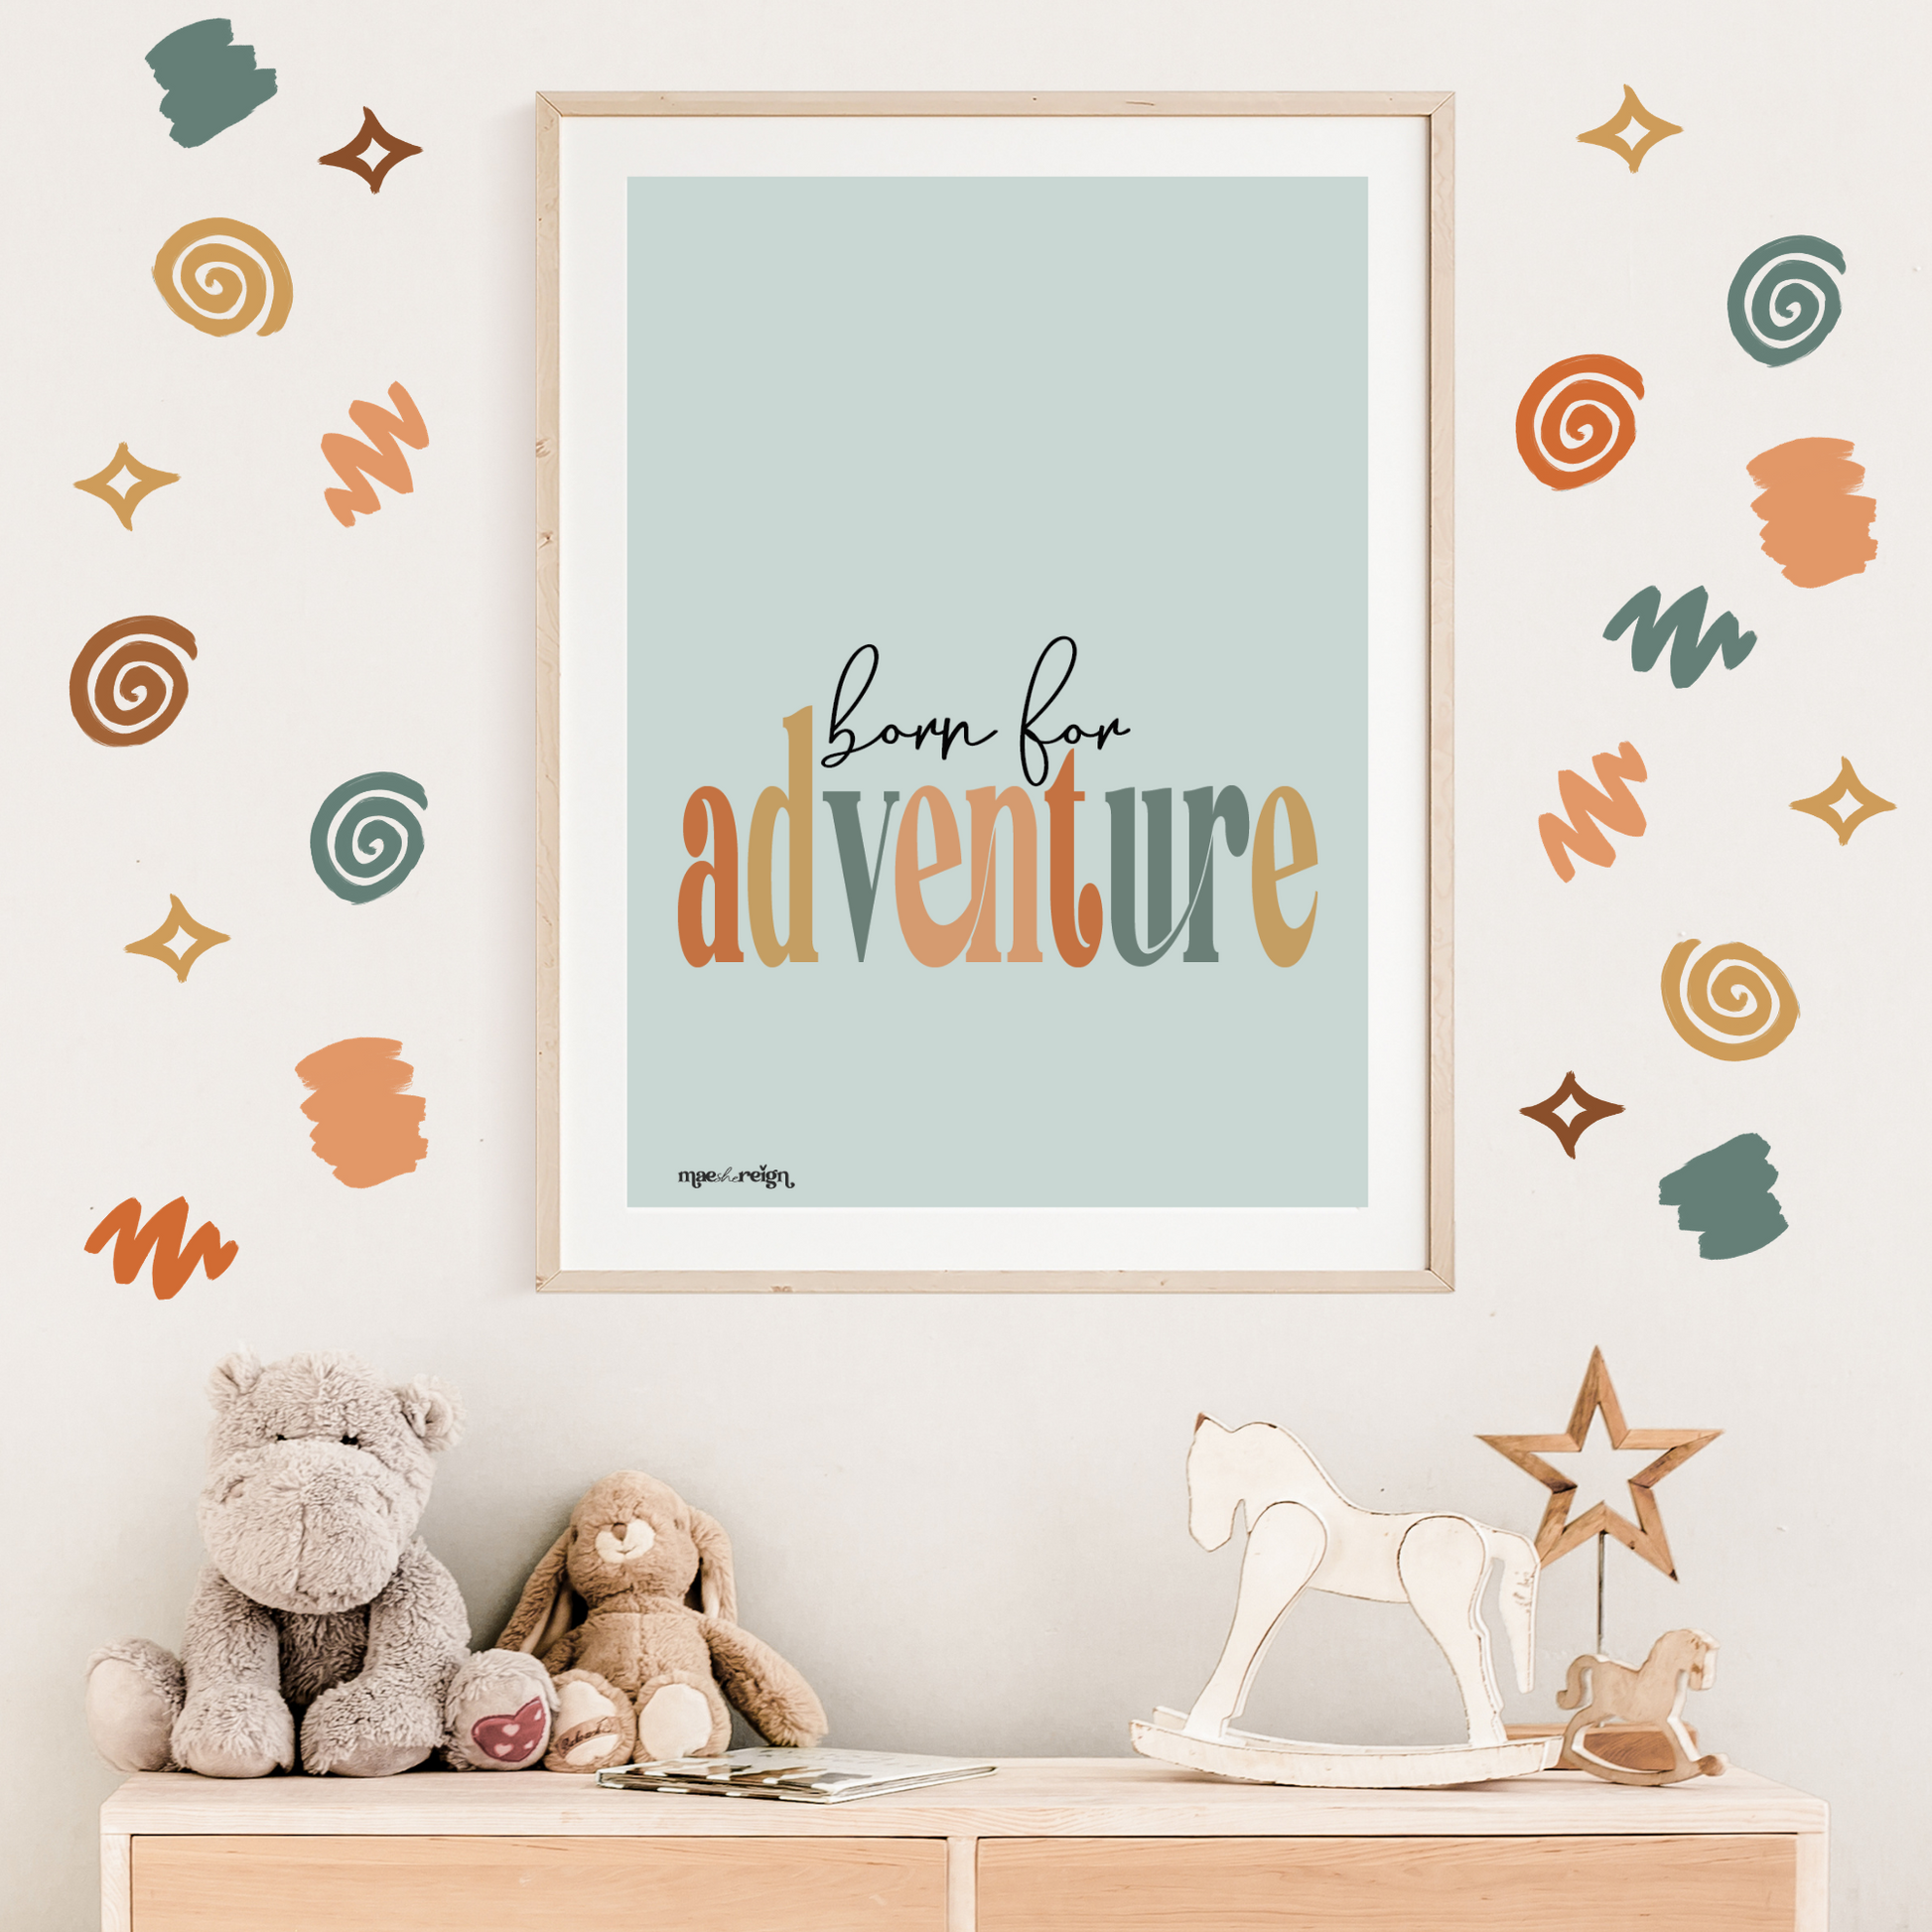 Safari 'Born For Adventure' Artwork Print - Mae She Reign - Creative Studio